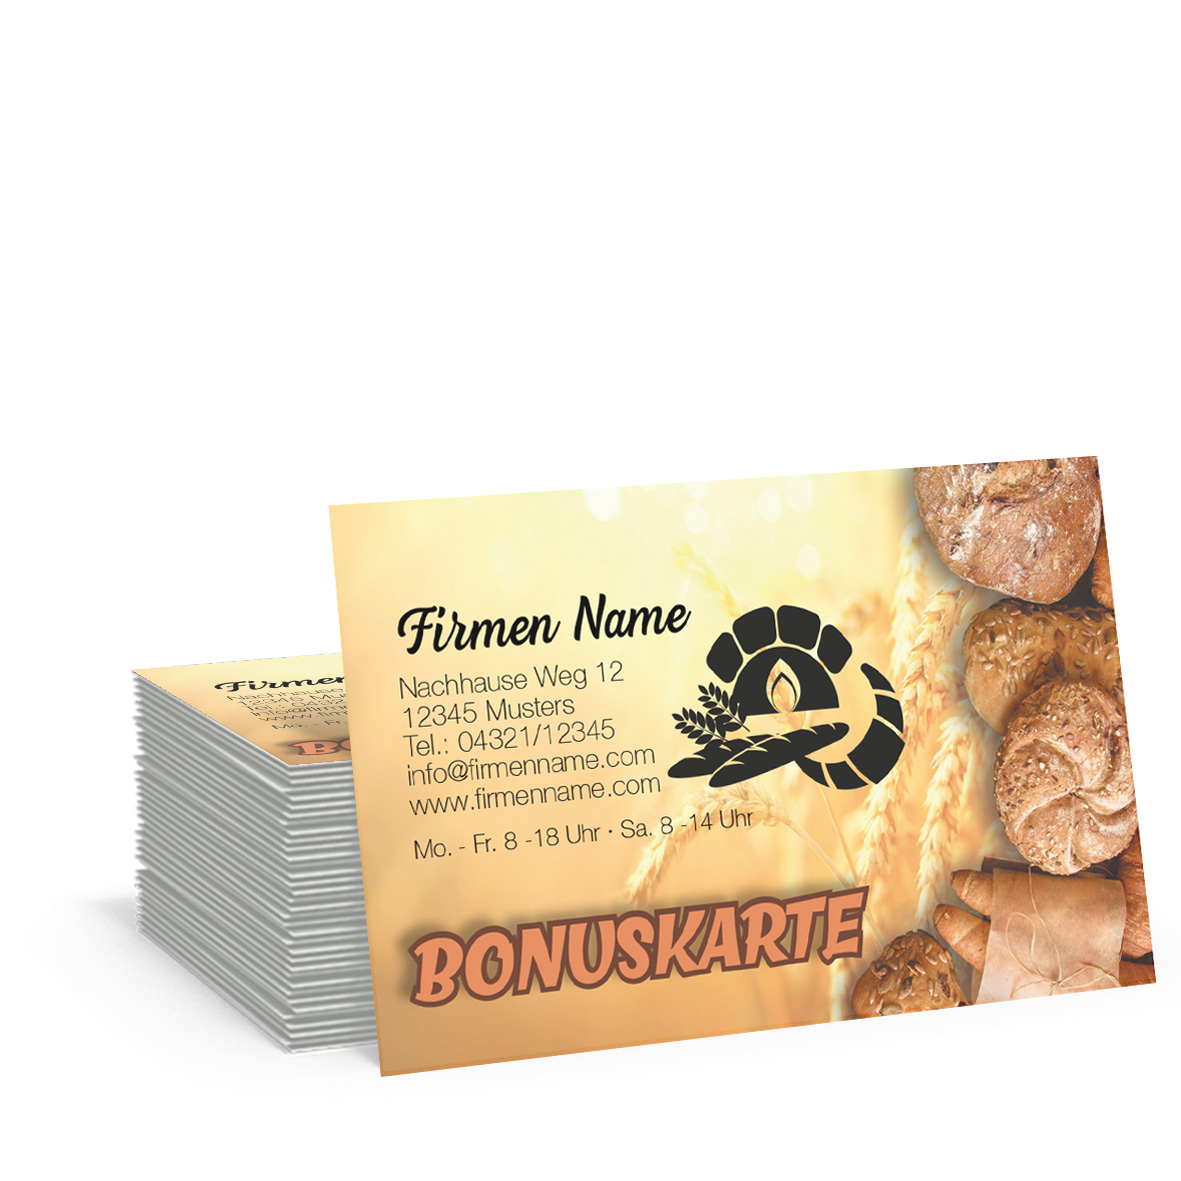 Bäckerei Bonuskarten Treuekarten Rabattkarten Bäcker Bonuskarte Backstube 